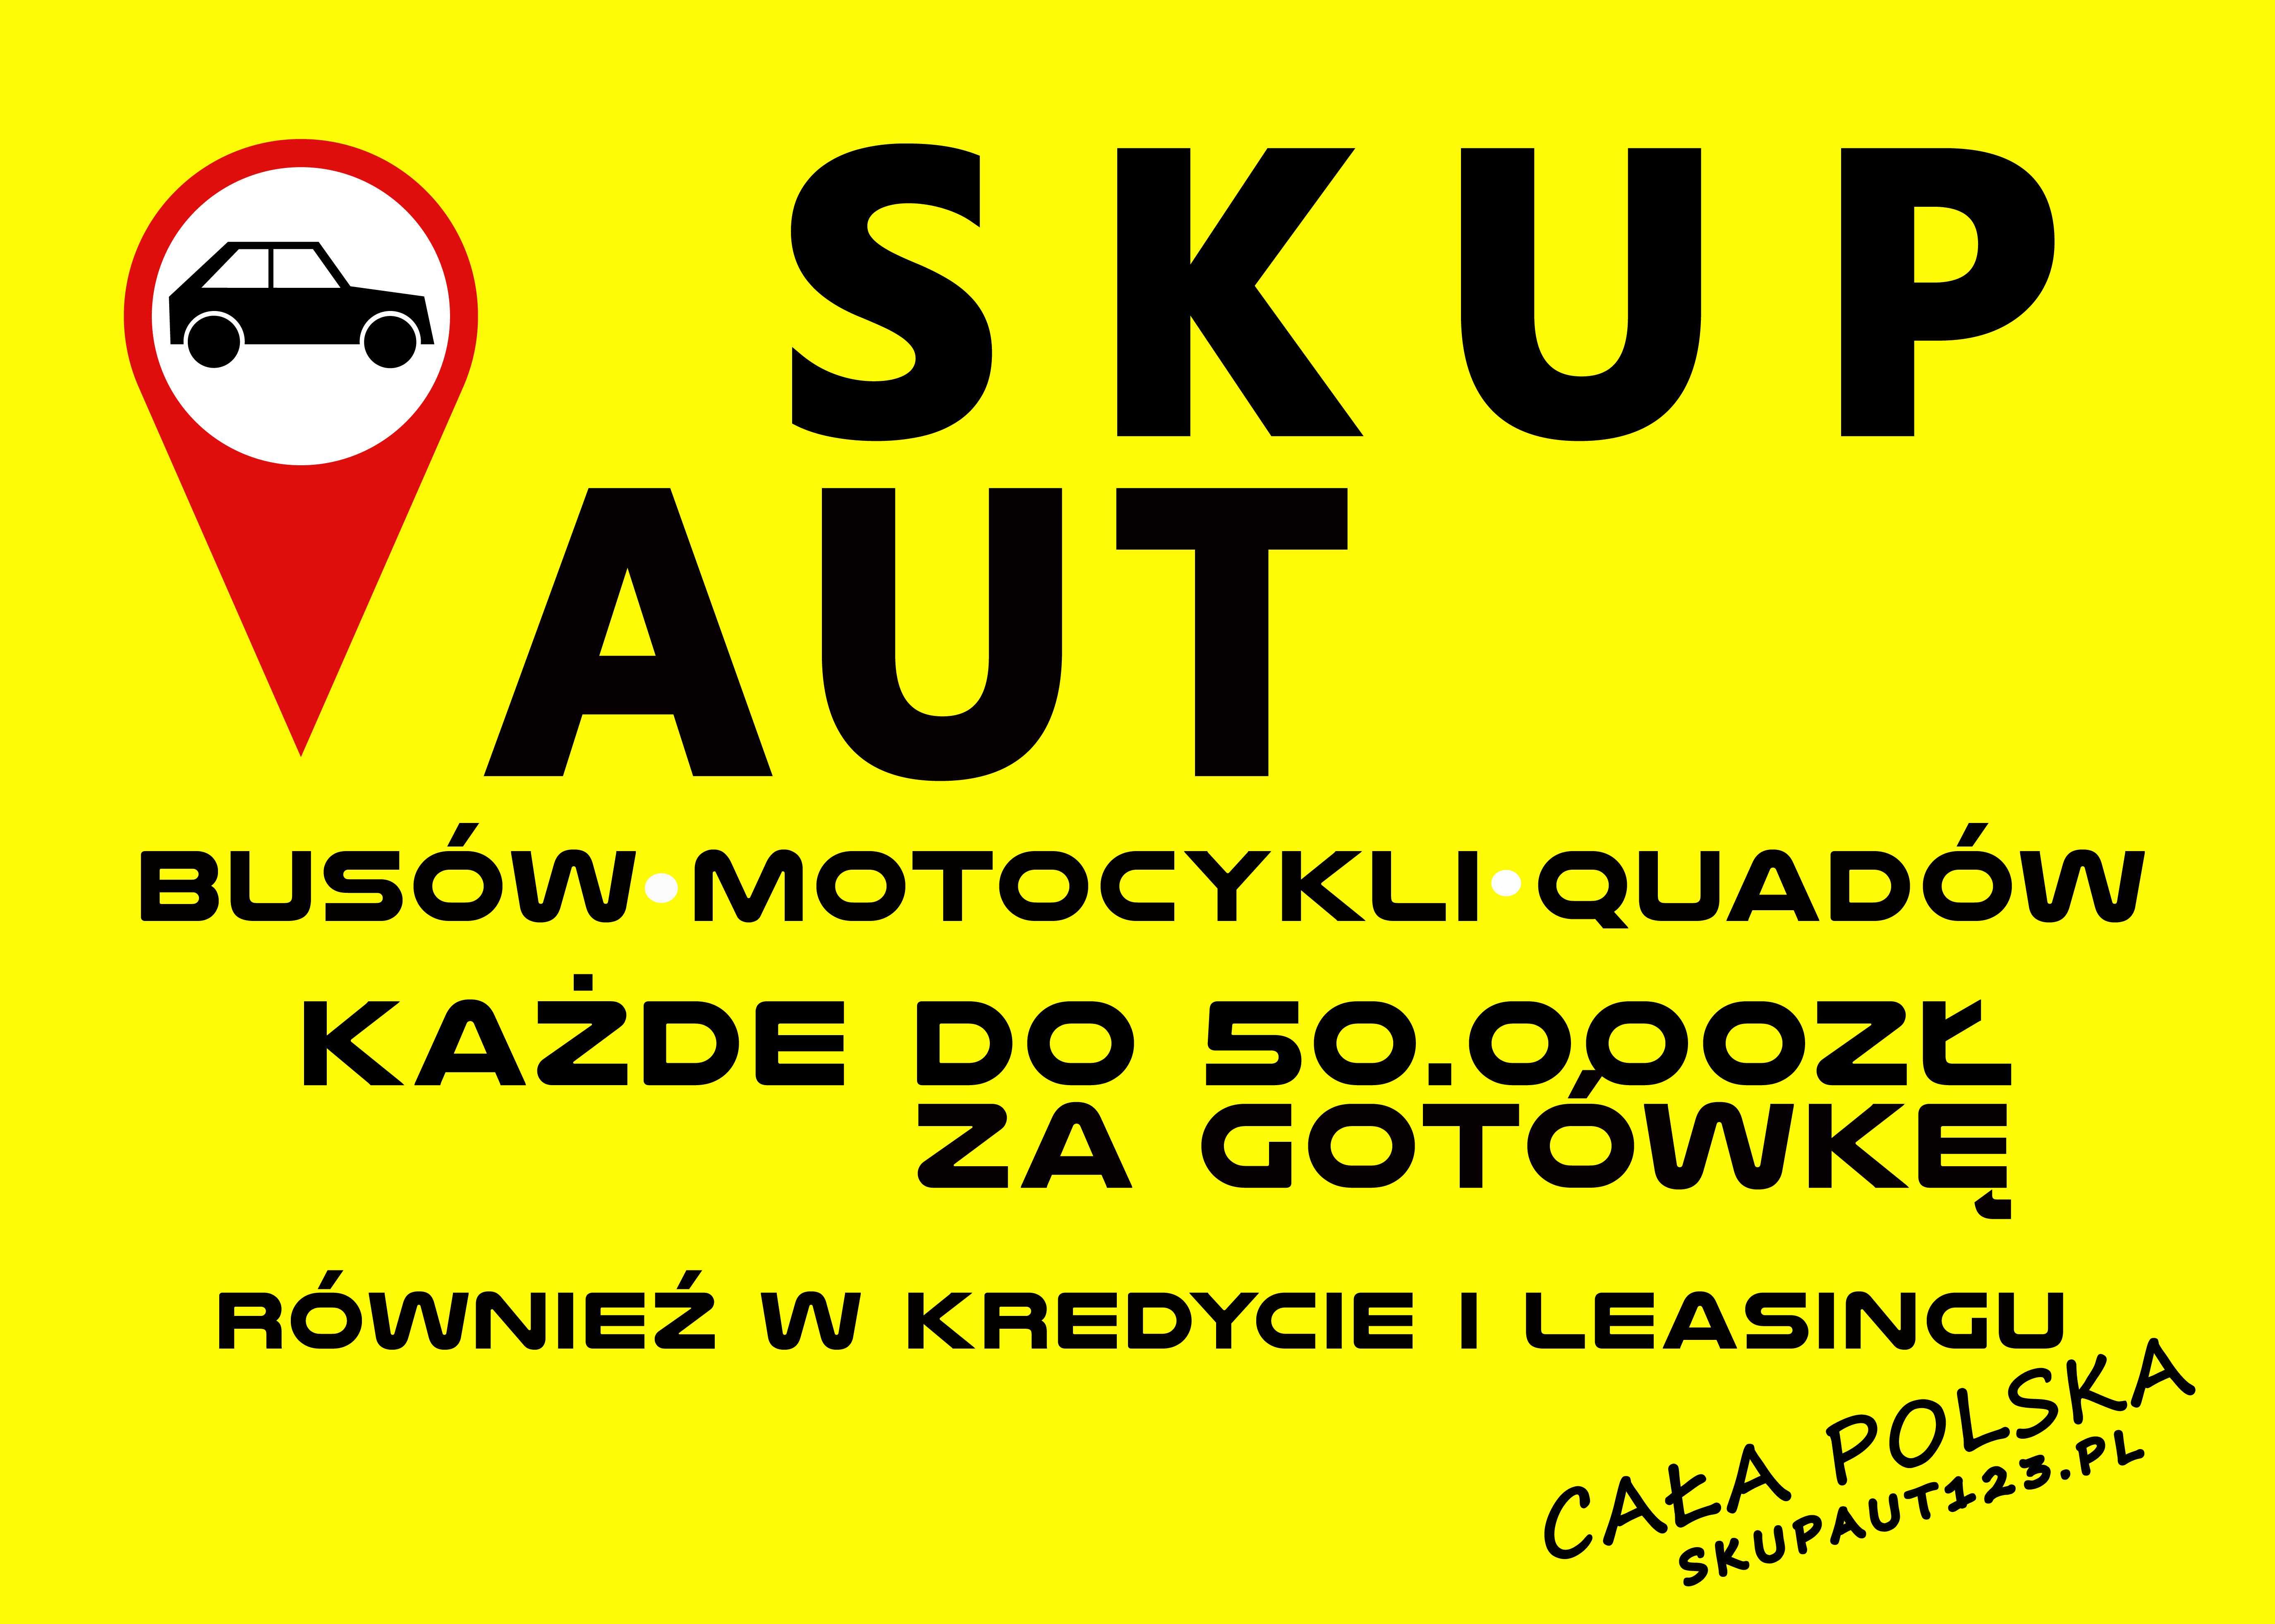 SKUP AUT i Motocykli * 884_656_525 skupaut123.pl Gotówka od RĘKI